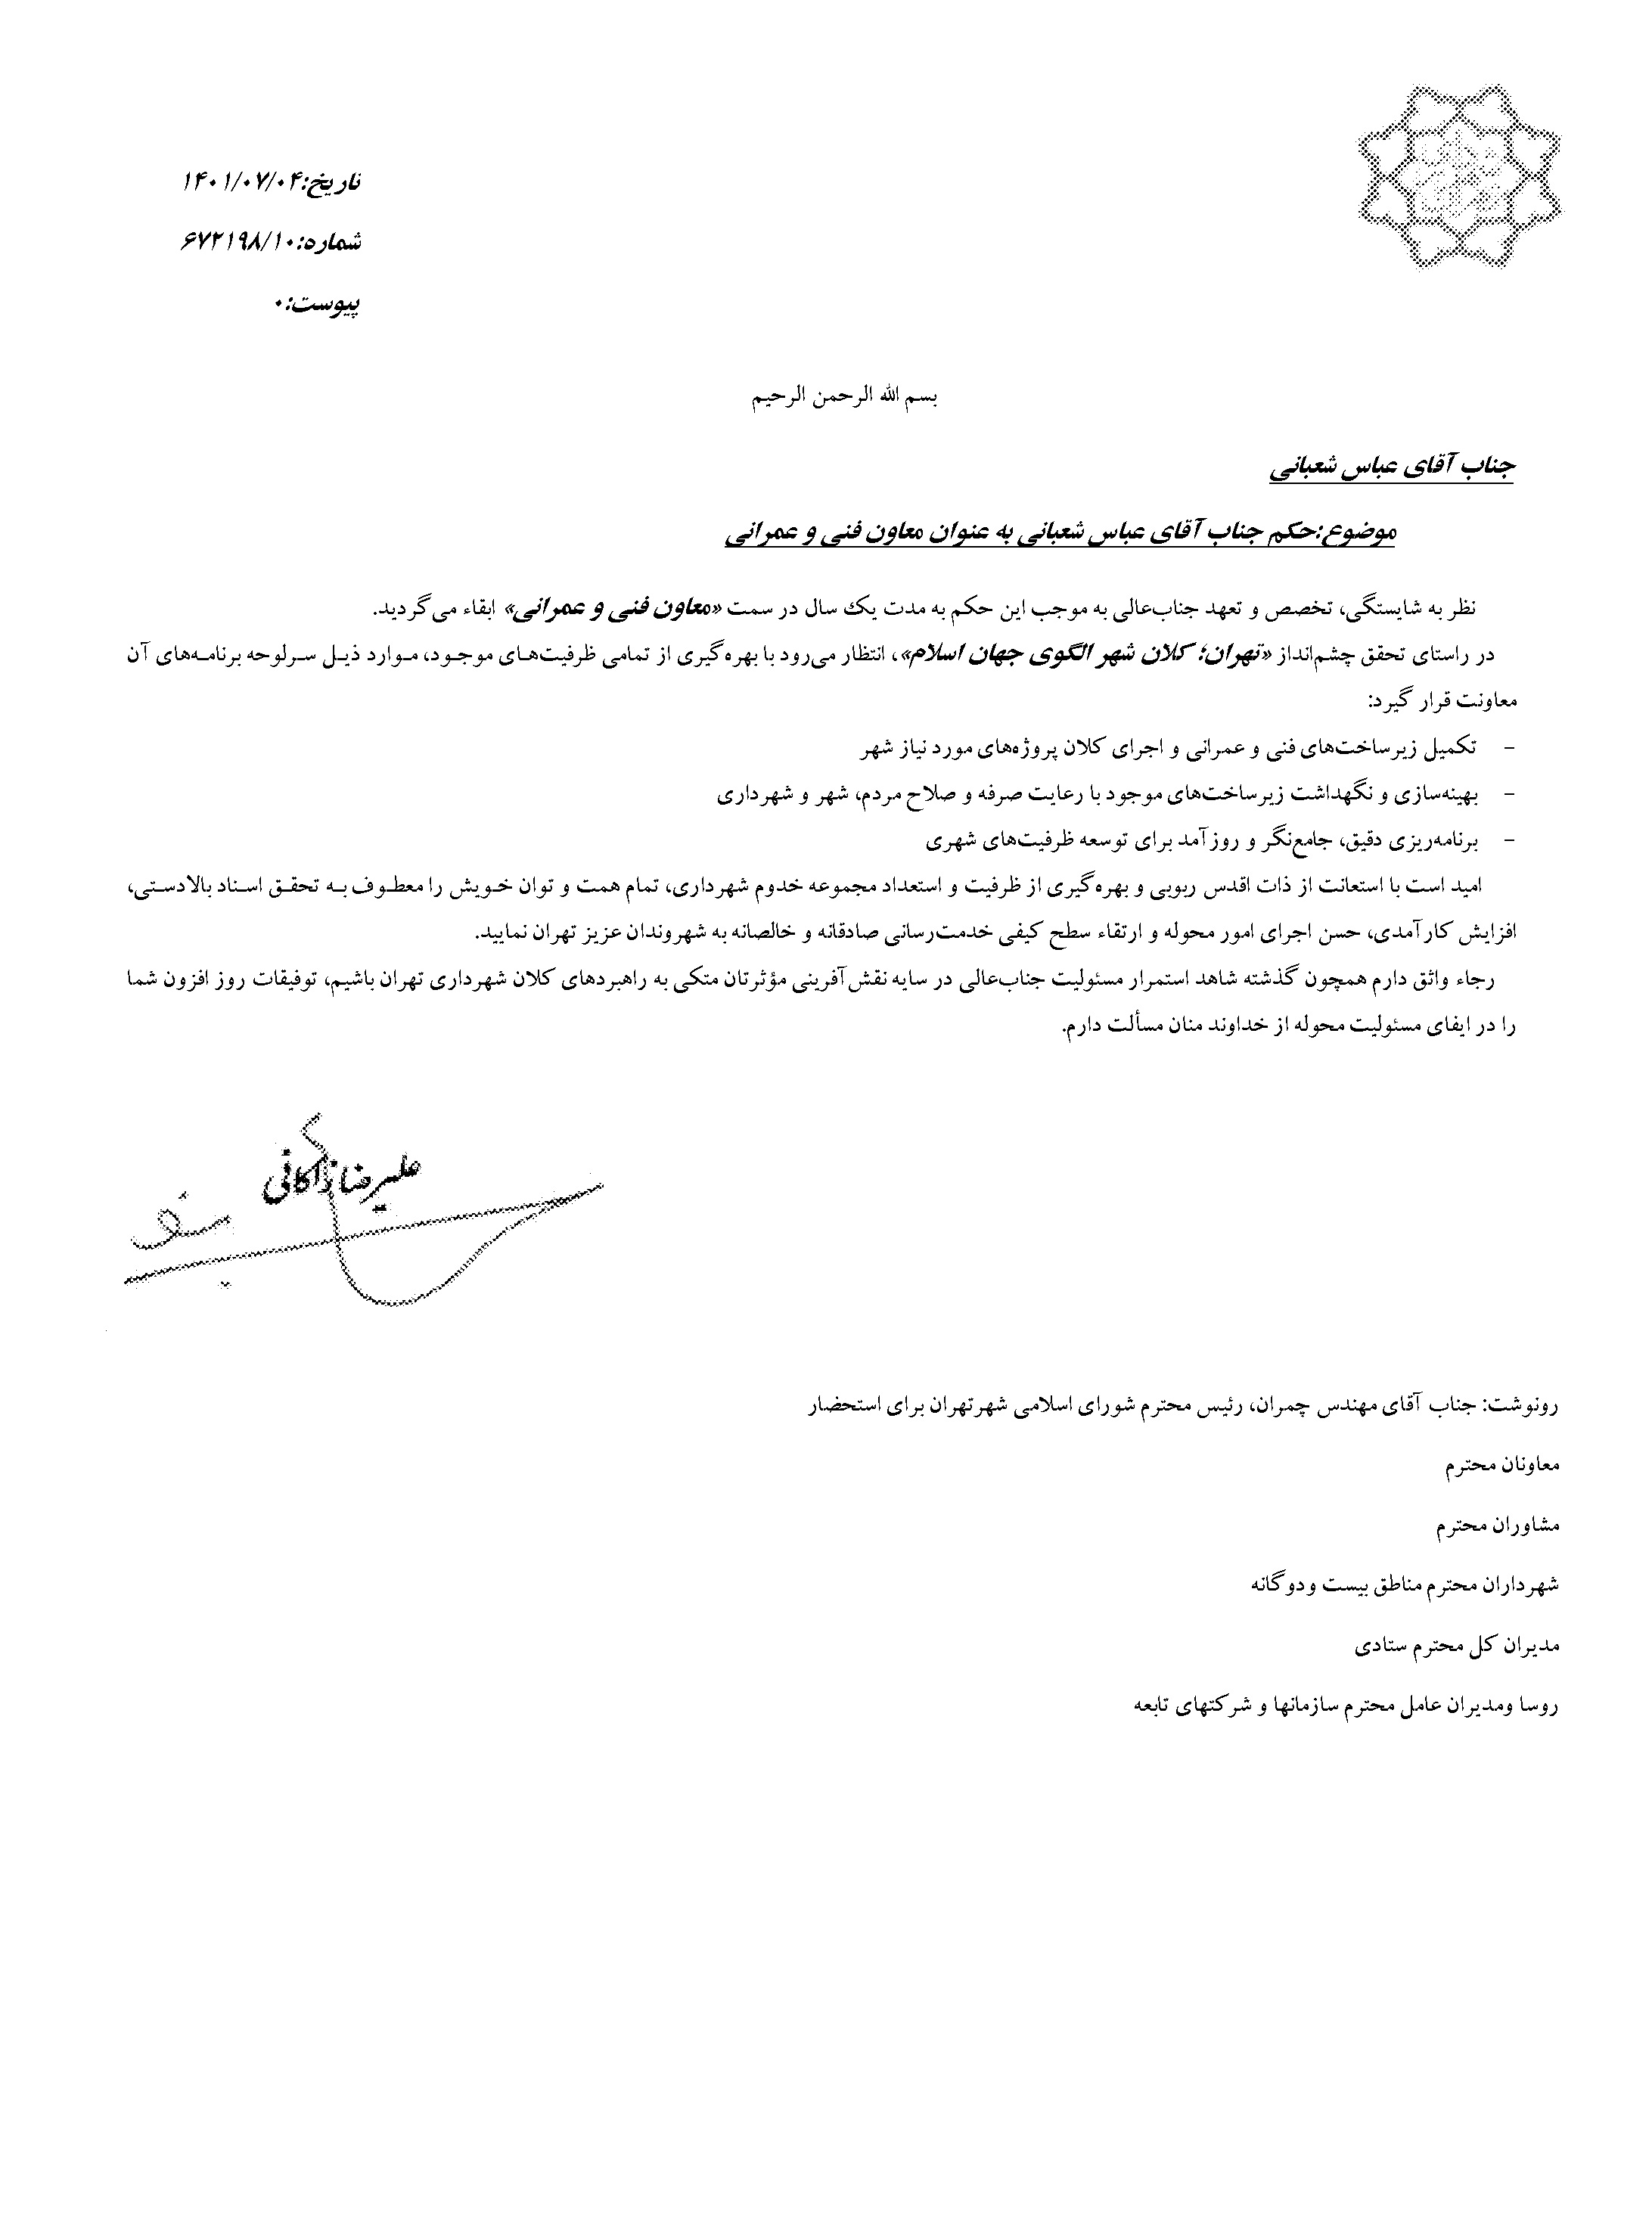 ابقای «عباس شعبانی» در معاونت فنی و عمرانی شهرداری تهران